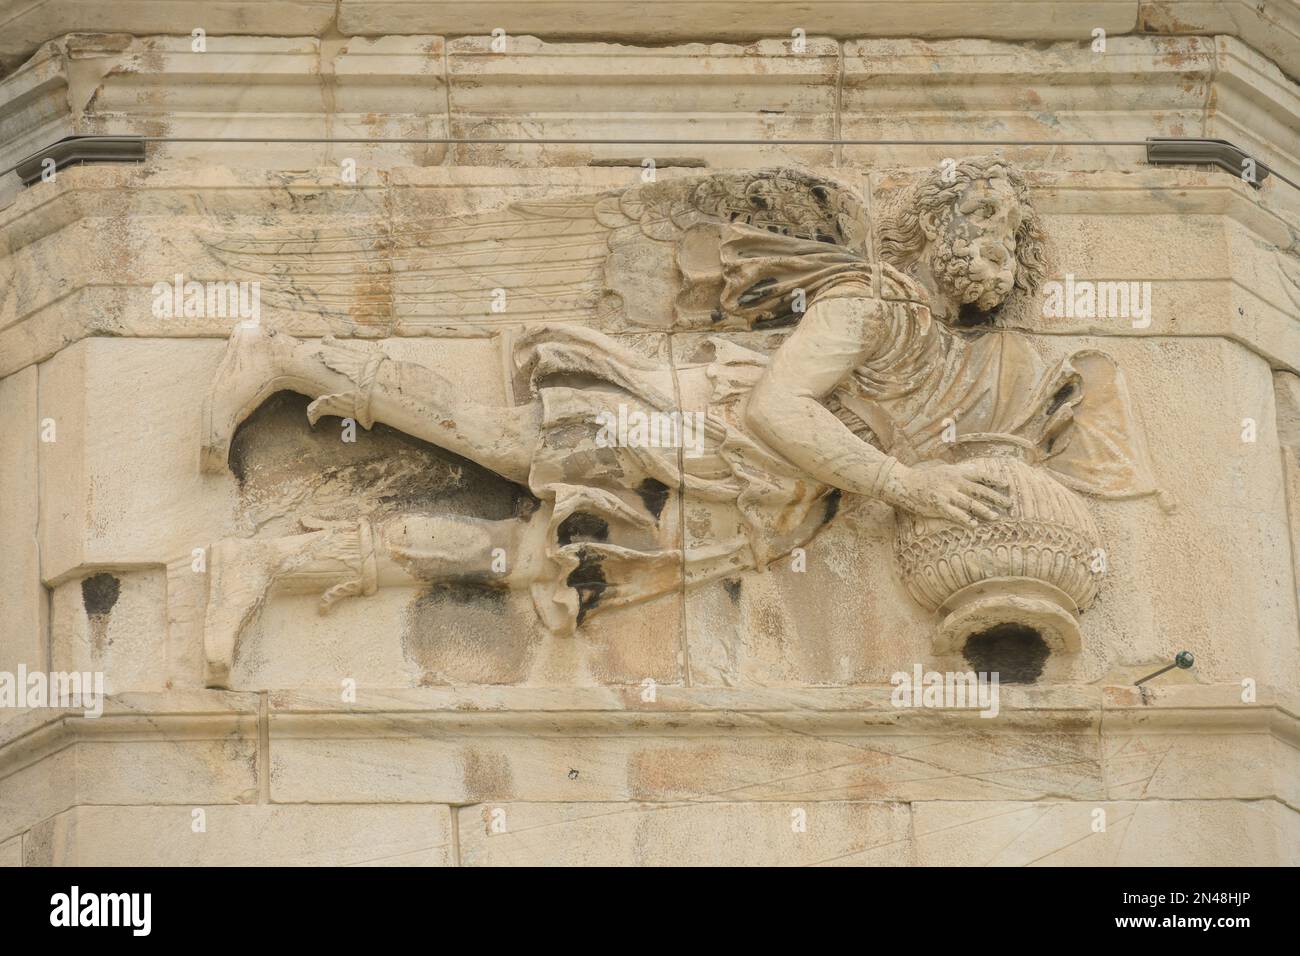 Sollievo Windgott, Turm der Winde, Römische Agora, Athen, Griechenland Foto Stock